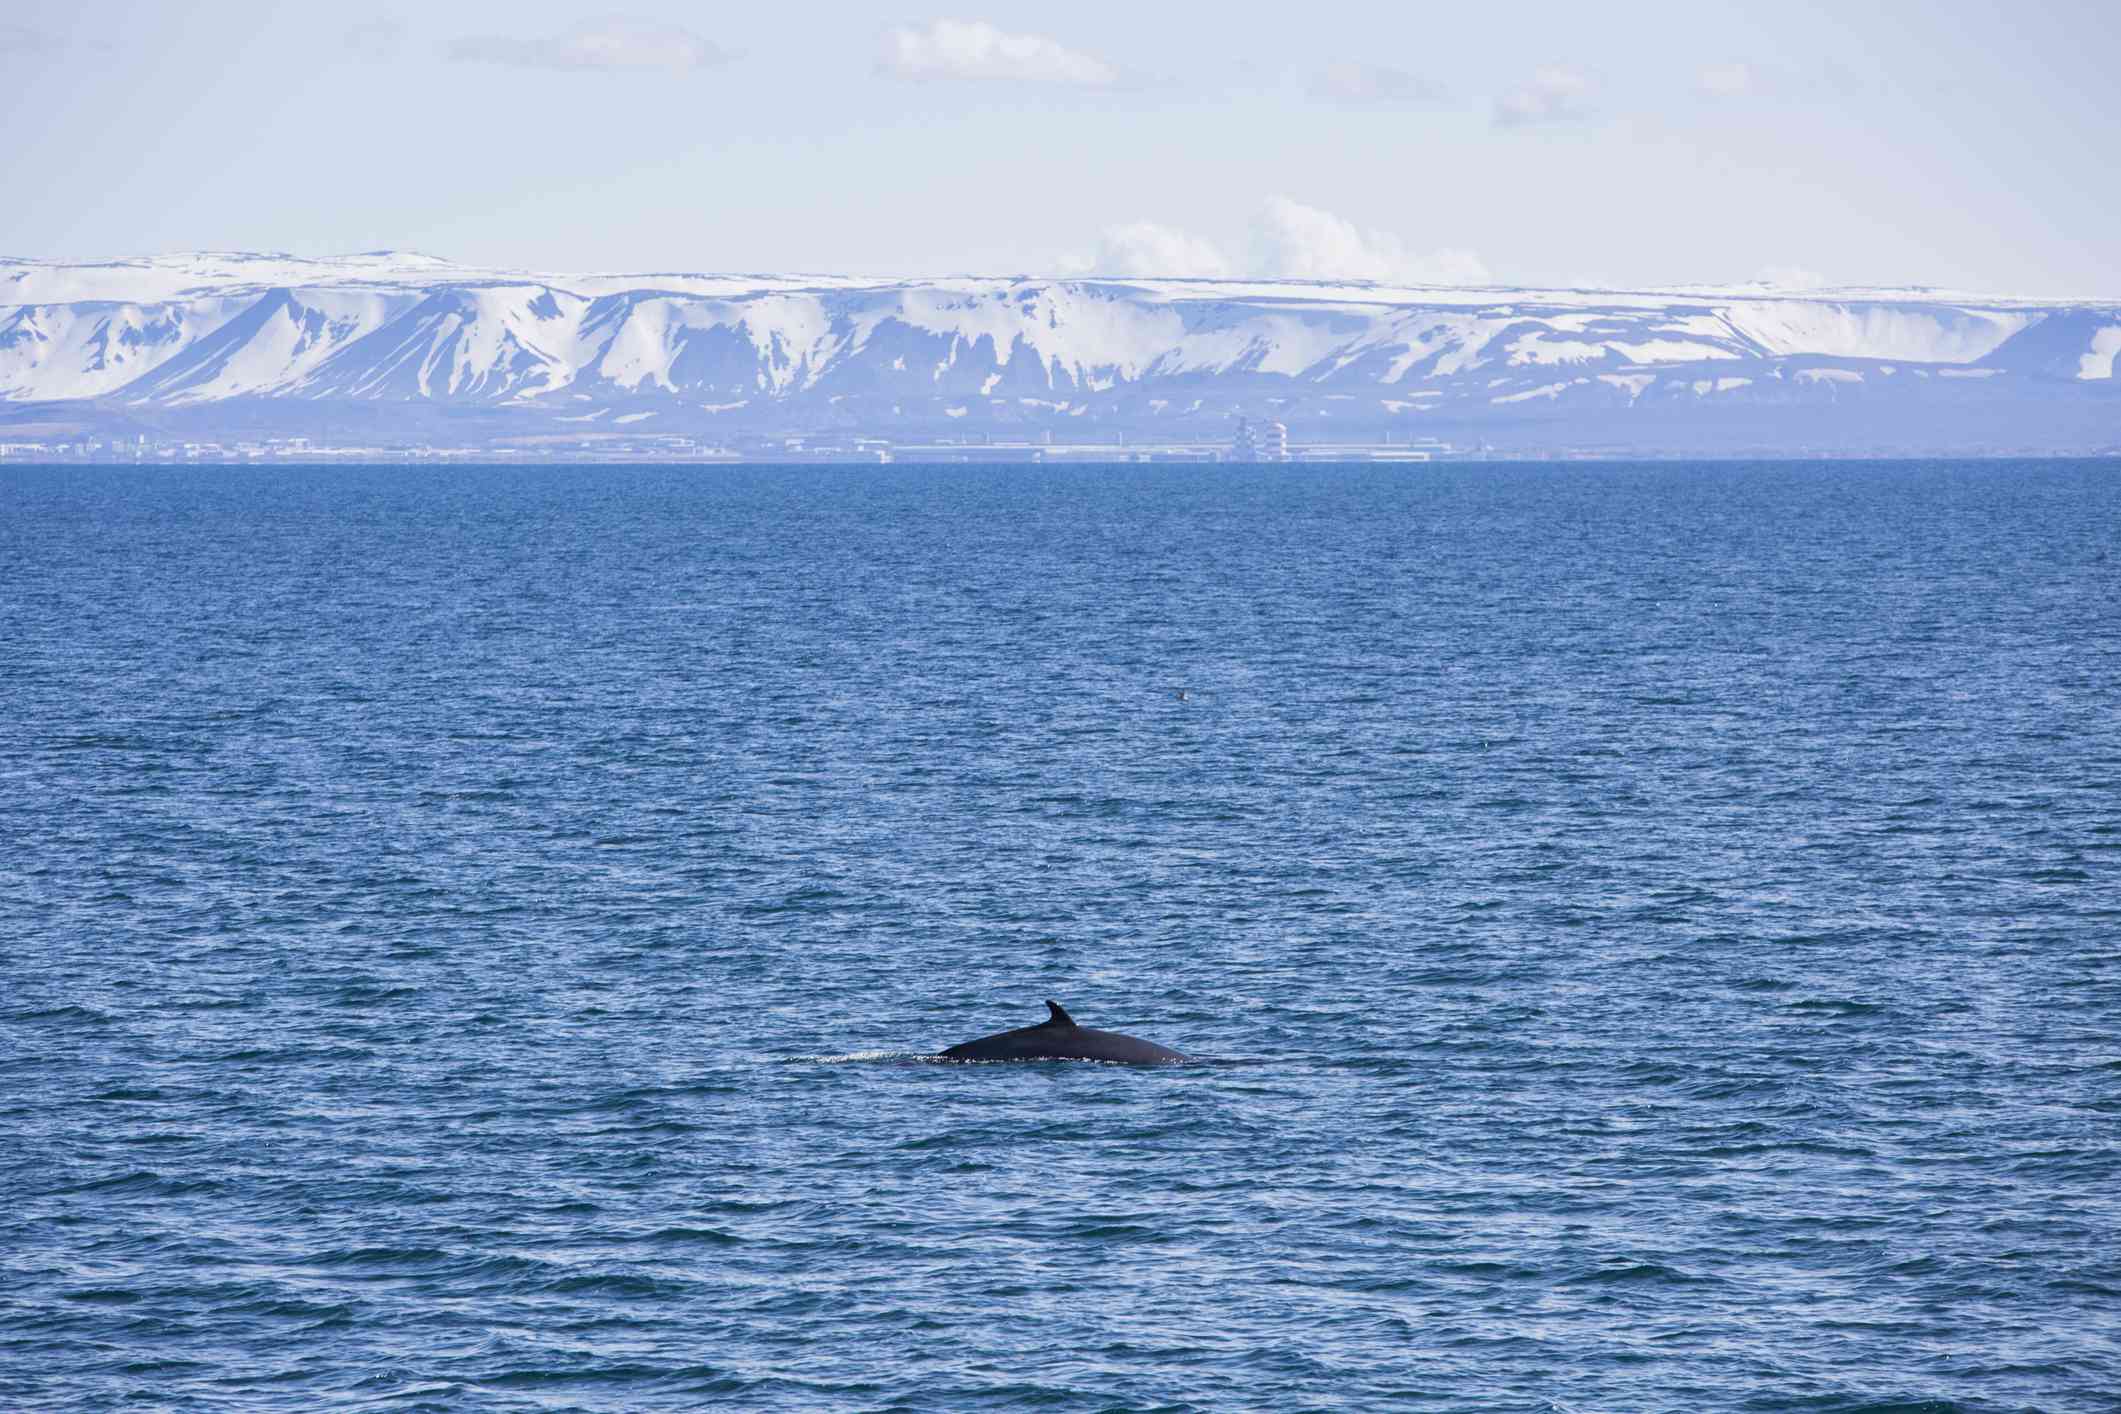 鲸鱼的后部穿过冰岛的蓝色水域，远处是雷克雅未克的白雪皑皑的山脉